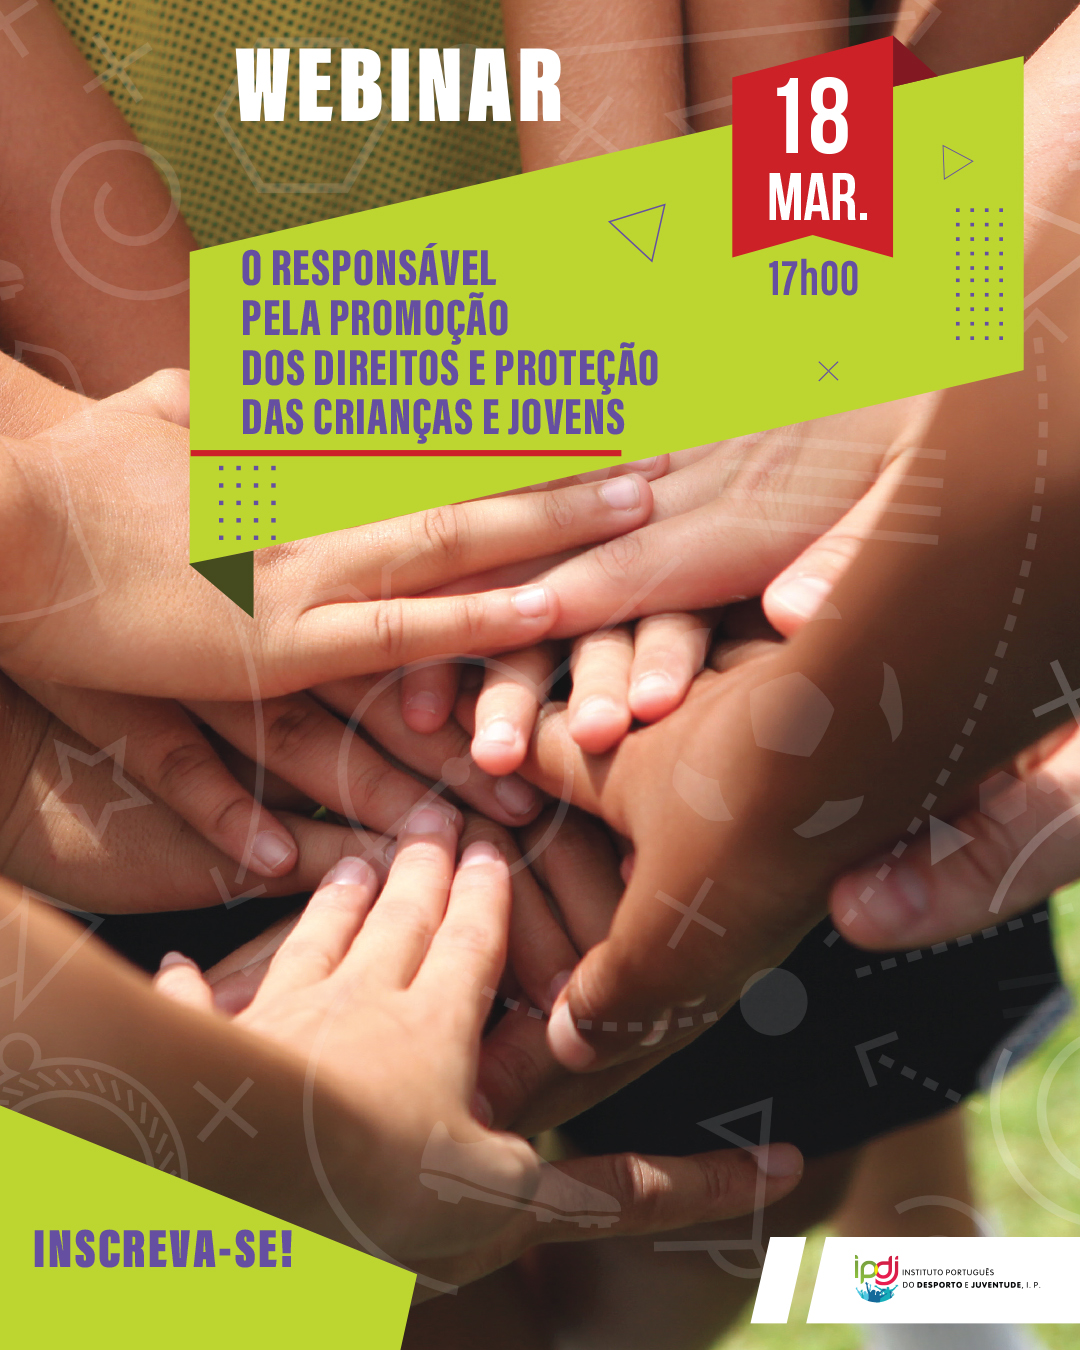 📢🌟 Webinar: “O responsável pela promoção dos direitos e proteção das crianças e jovens” 🌟📢